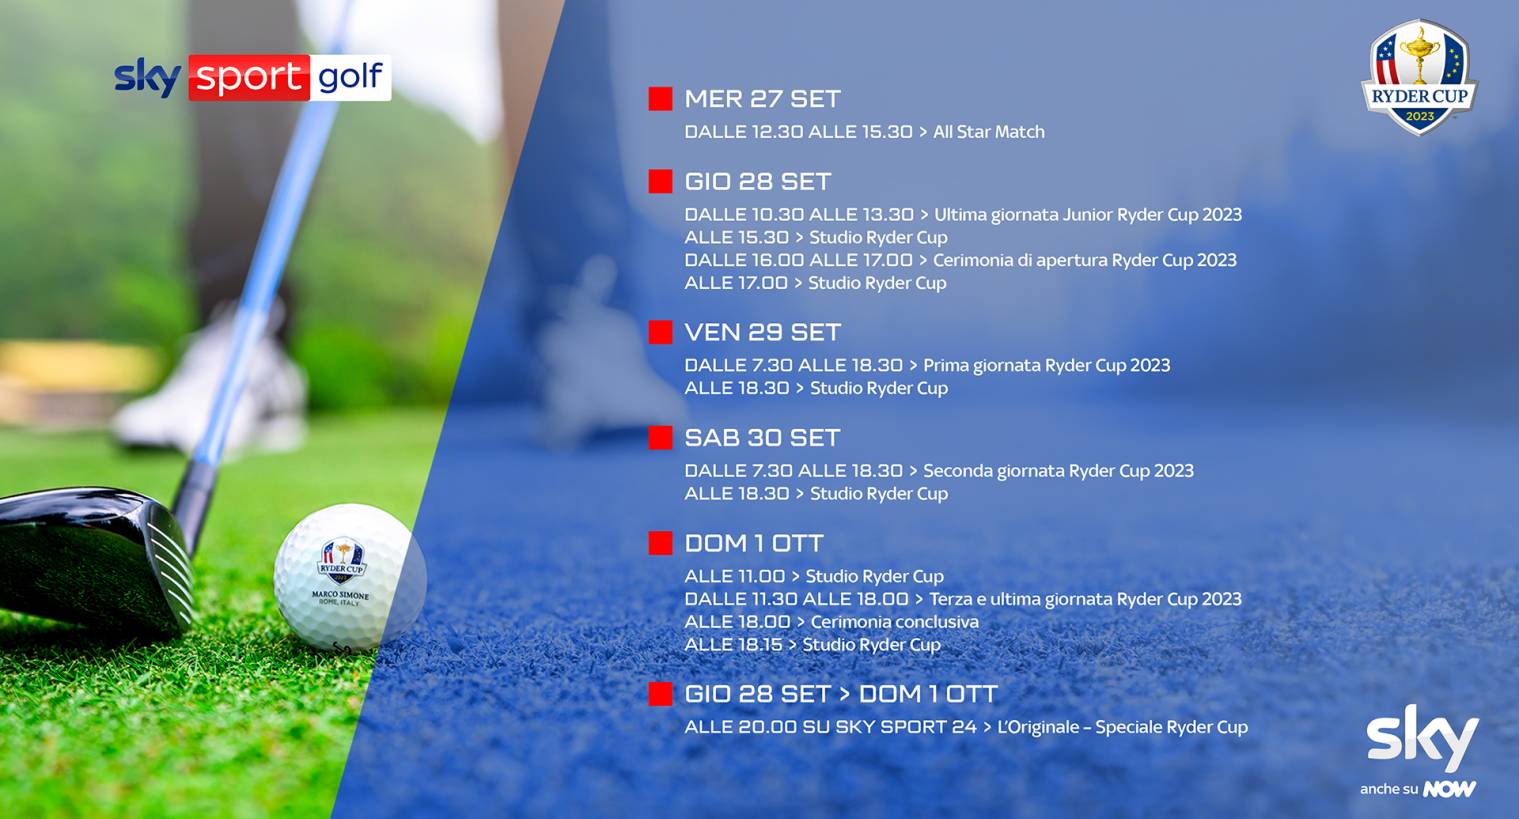 Ryder Cup 2023 🏌️, il Golf Mondiale da Roma in diretta su Sky e in streaming NOW